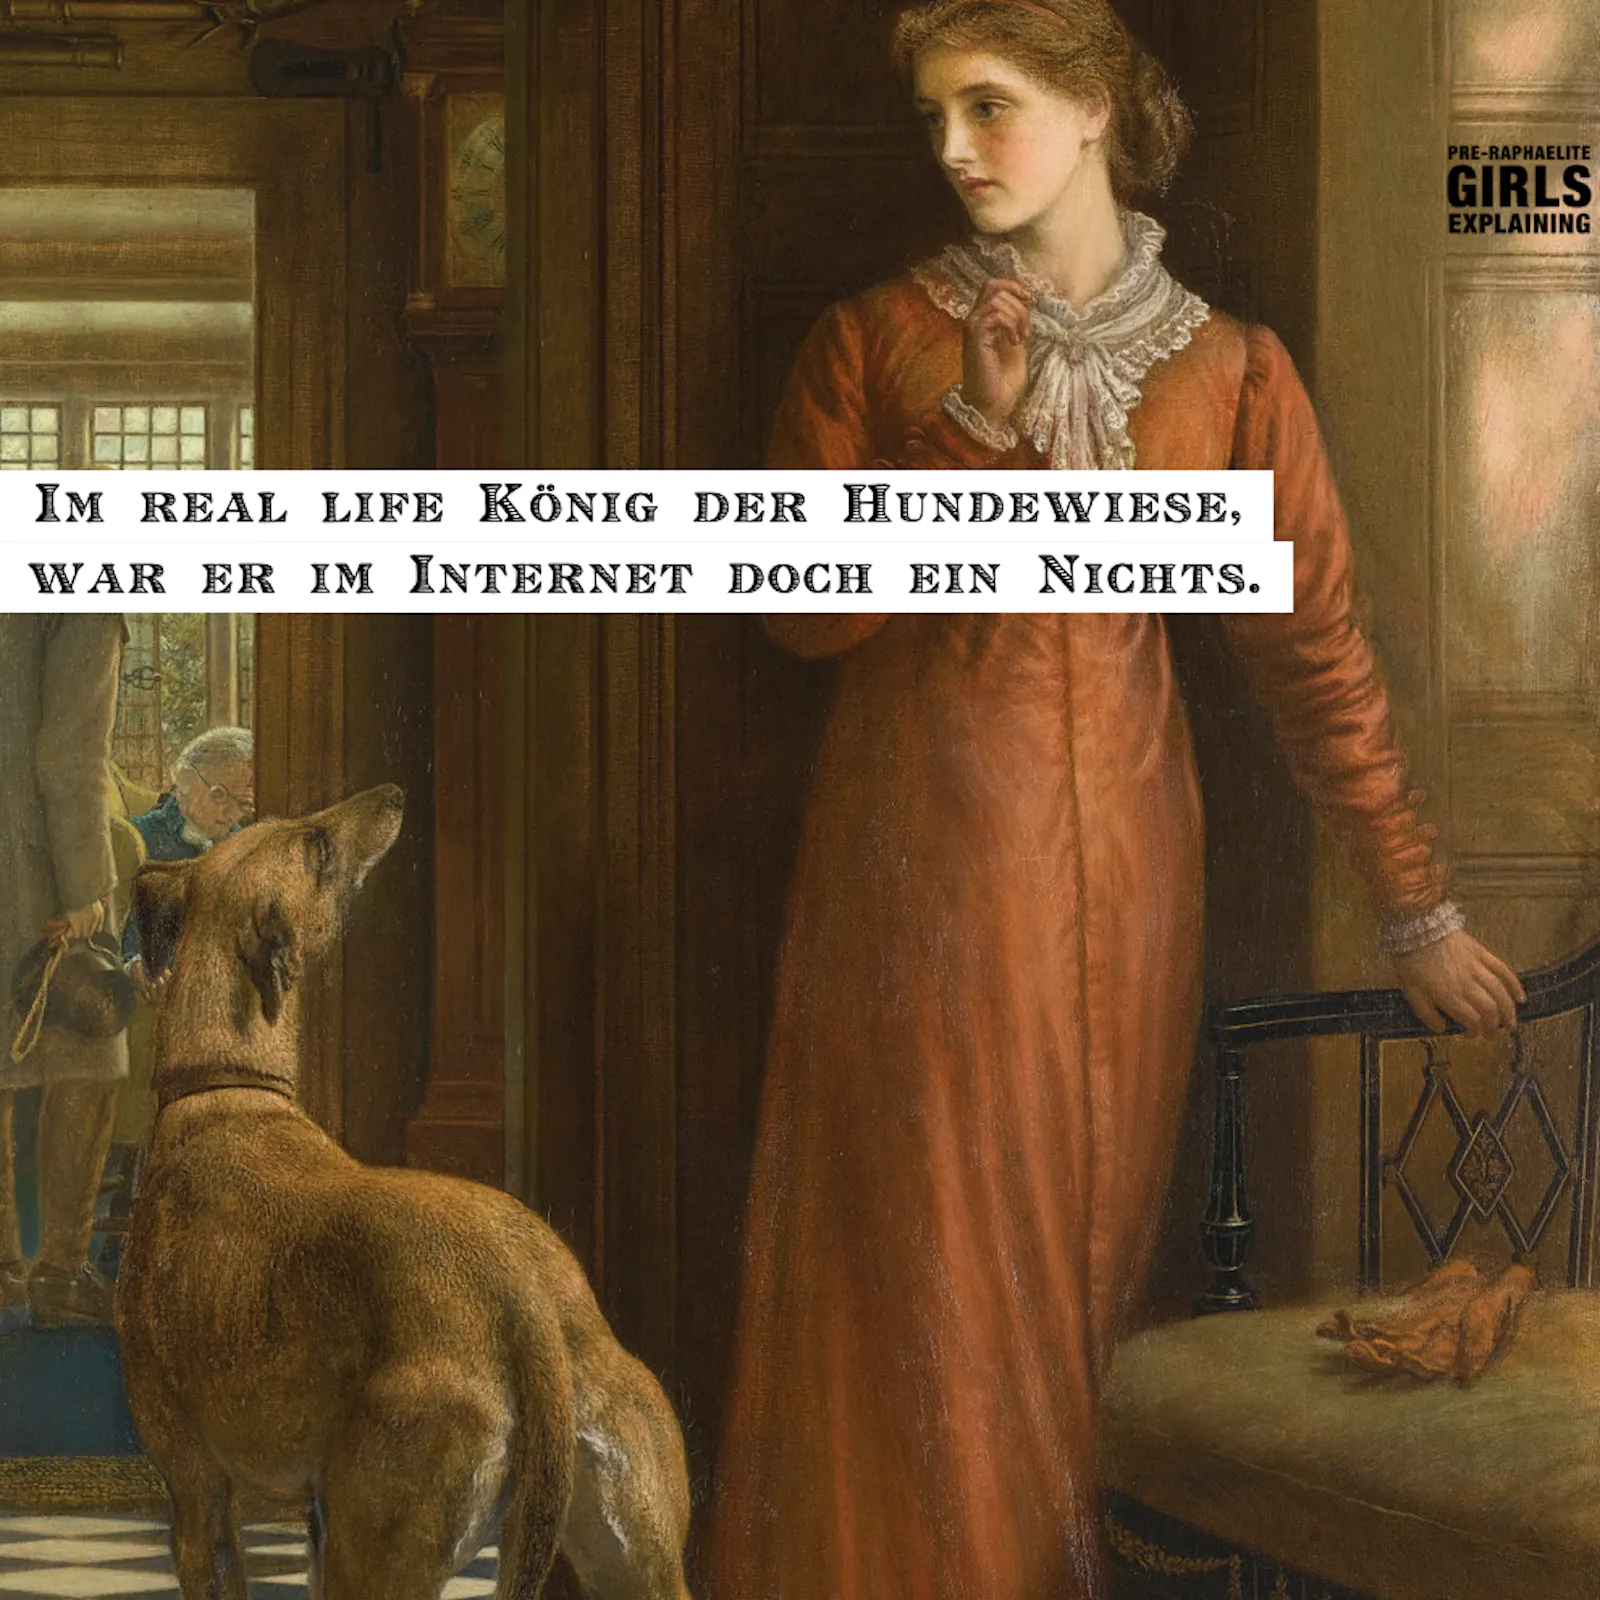 Gemäldeausschnitt: historisierend gekleidete Person mit hochgestecktem Haar, neben ihr ein Hund. Hinzugefügter Text: Im Real Life König der Hundeweise, war er im Internet doch ein Nichts.